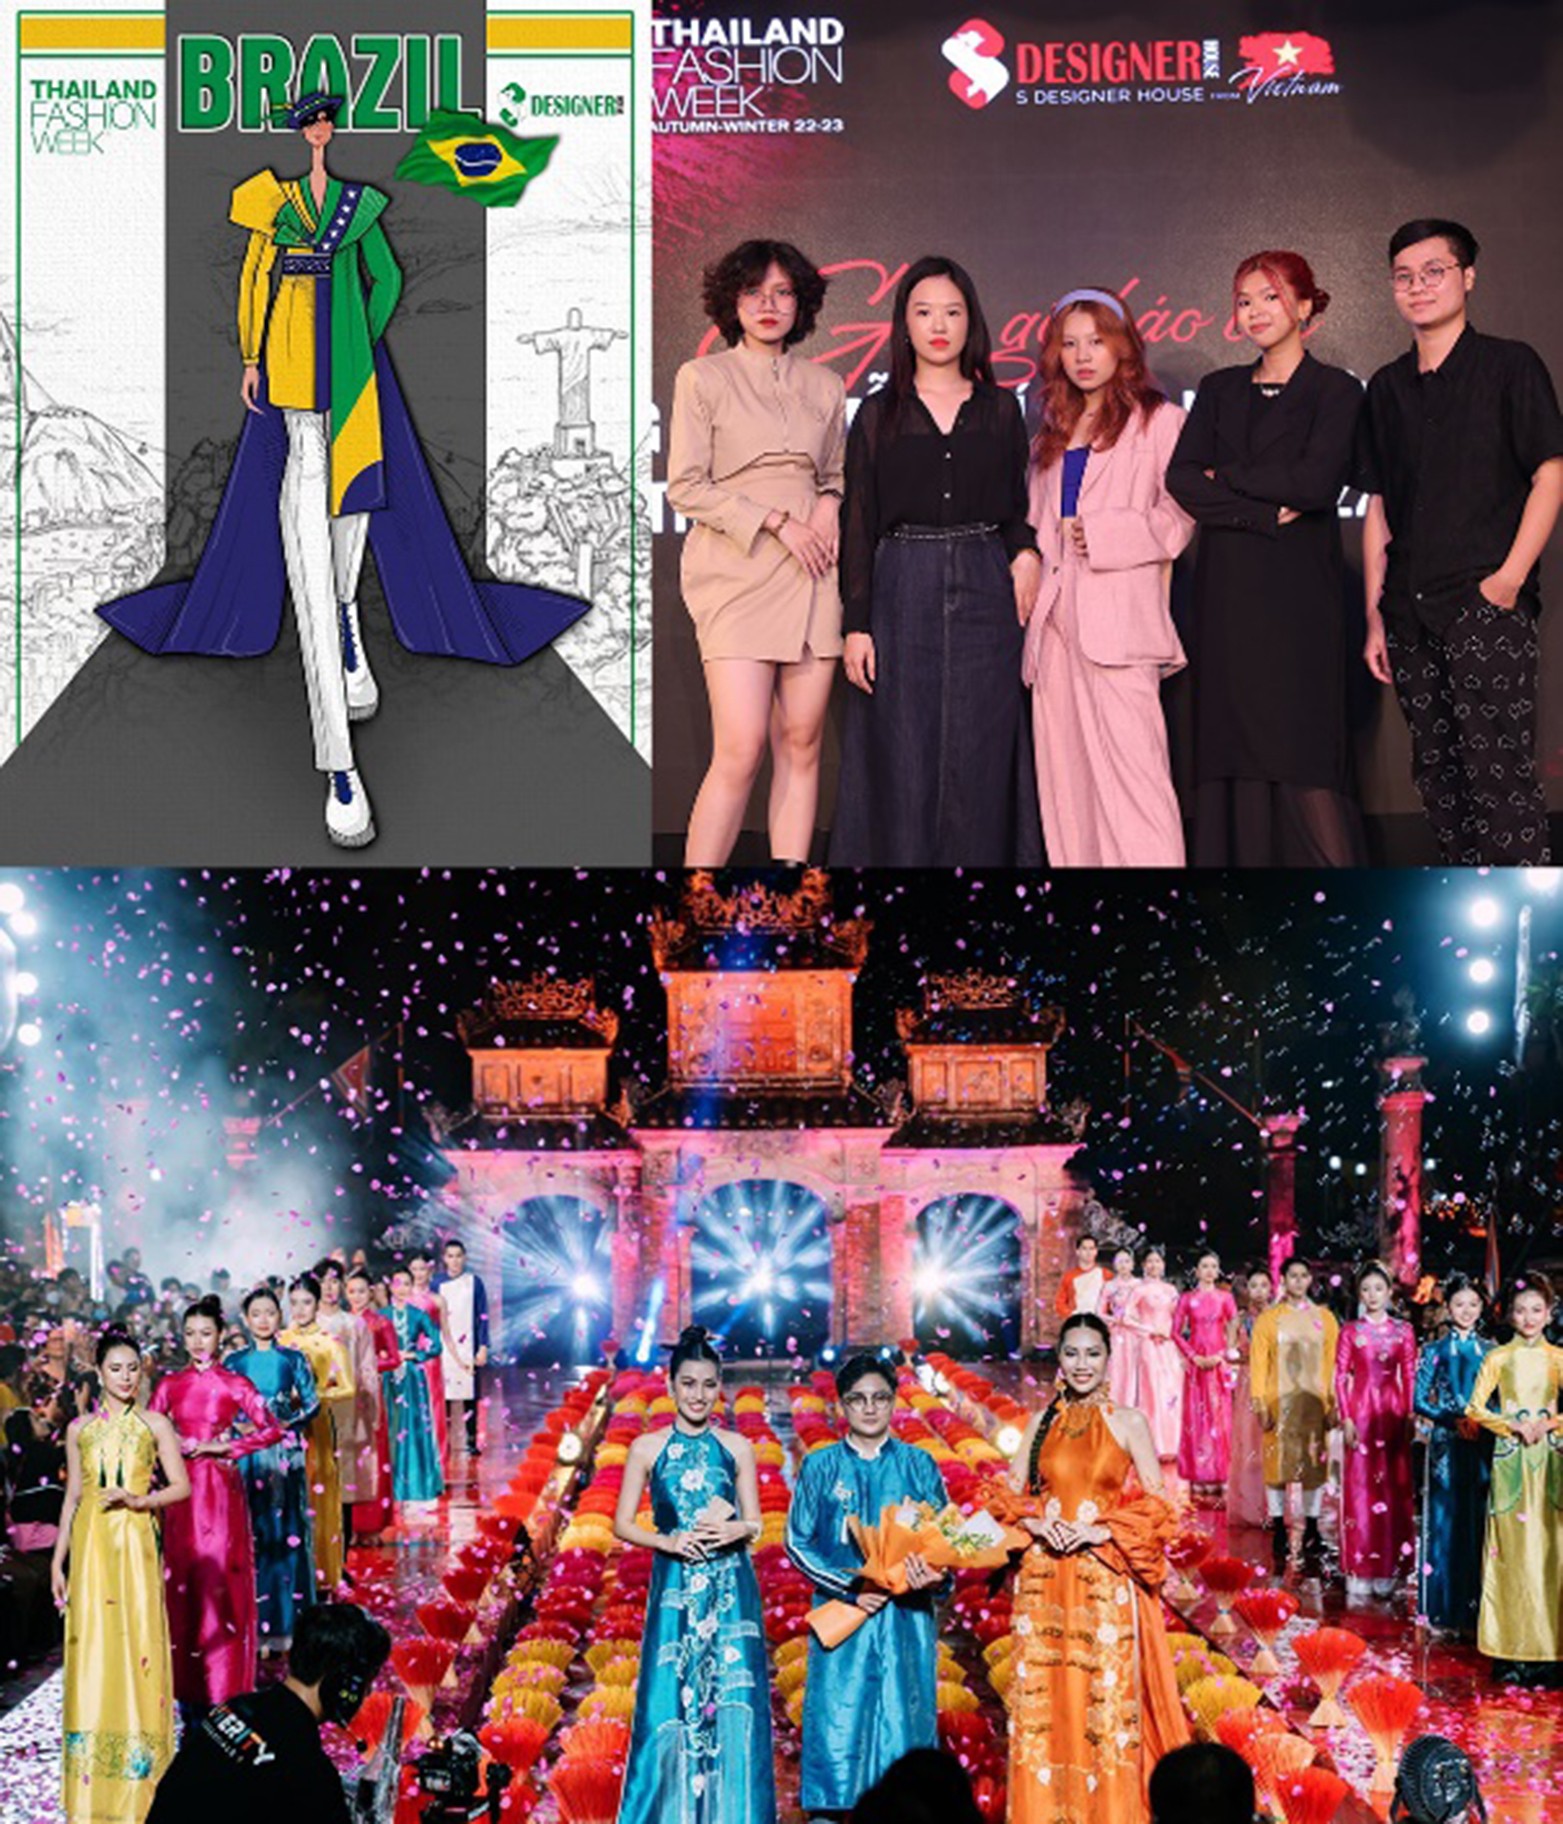 Sinh viên Phương Linh (thứ 3 từ phải sang, ảnh trên) với thiết kế tham dự Thailand Fashion Week 2022 và tham gia thiết kế trang phục áo dài trong show áo dài "Mỹ tục khả gia".